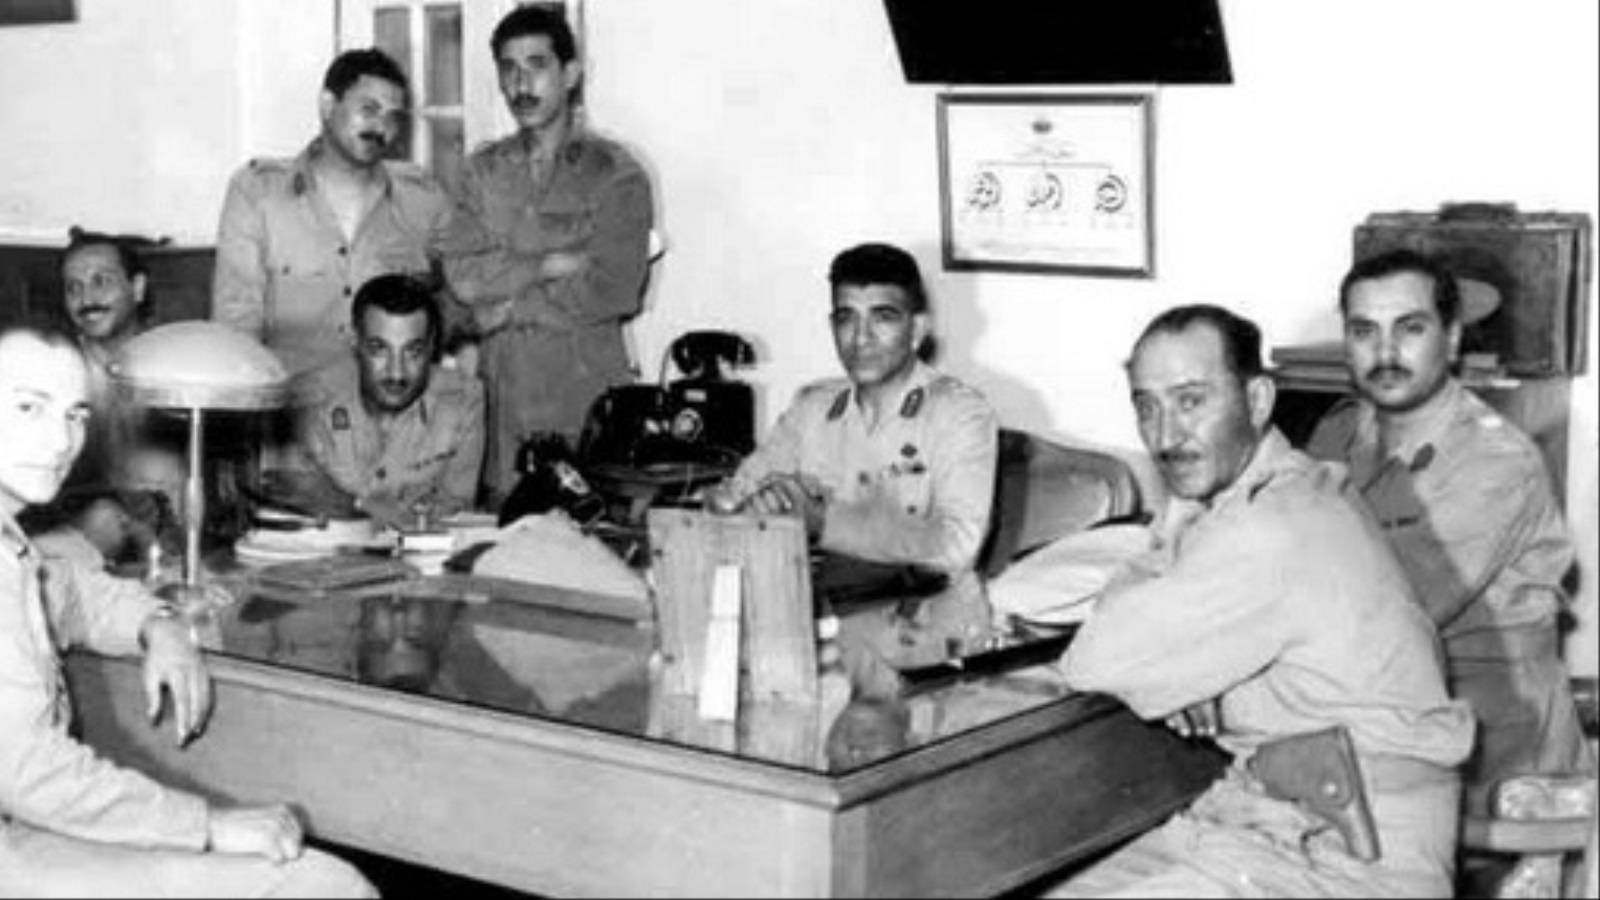 بعد انقلاب يوليو 52 رفع جمال عبد الناصر شعارات الكرامة والعزة، إلا أن سياسات نظامه العسكري لم تختلف كثيرا عن العهد الملكي المقترن بالاحتلال الإنجليزي